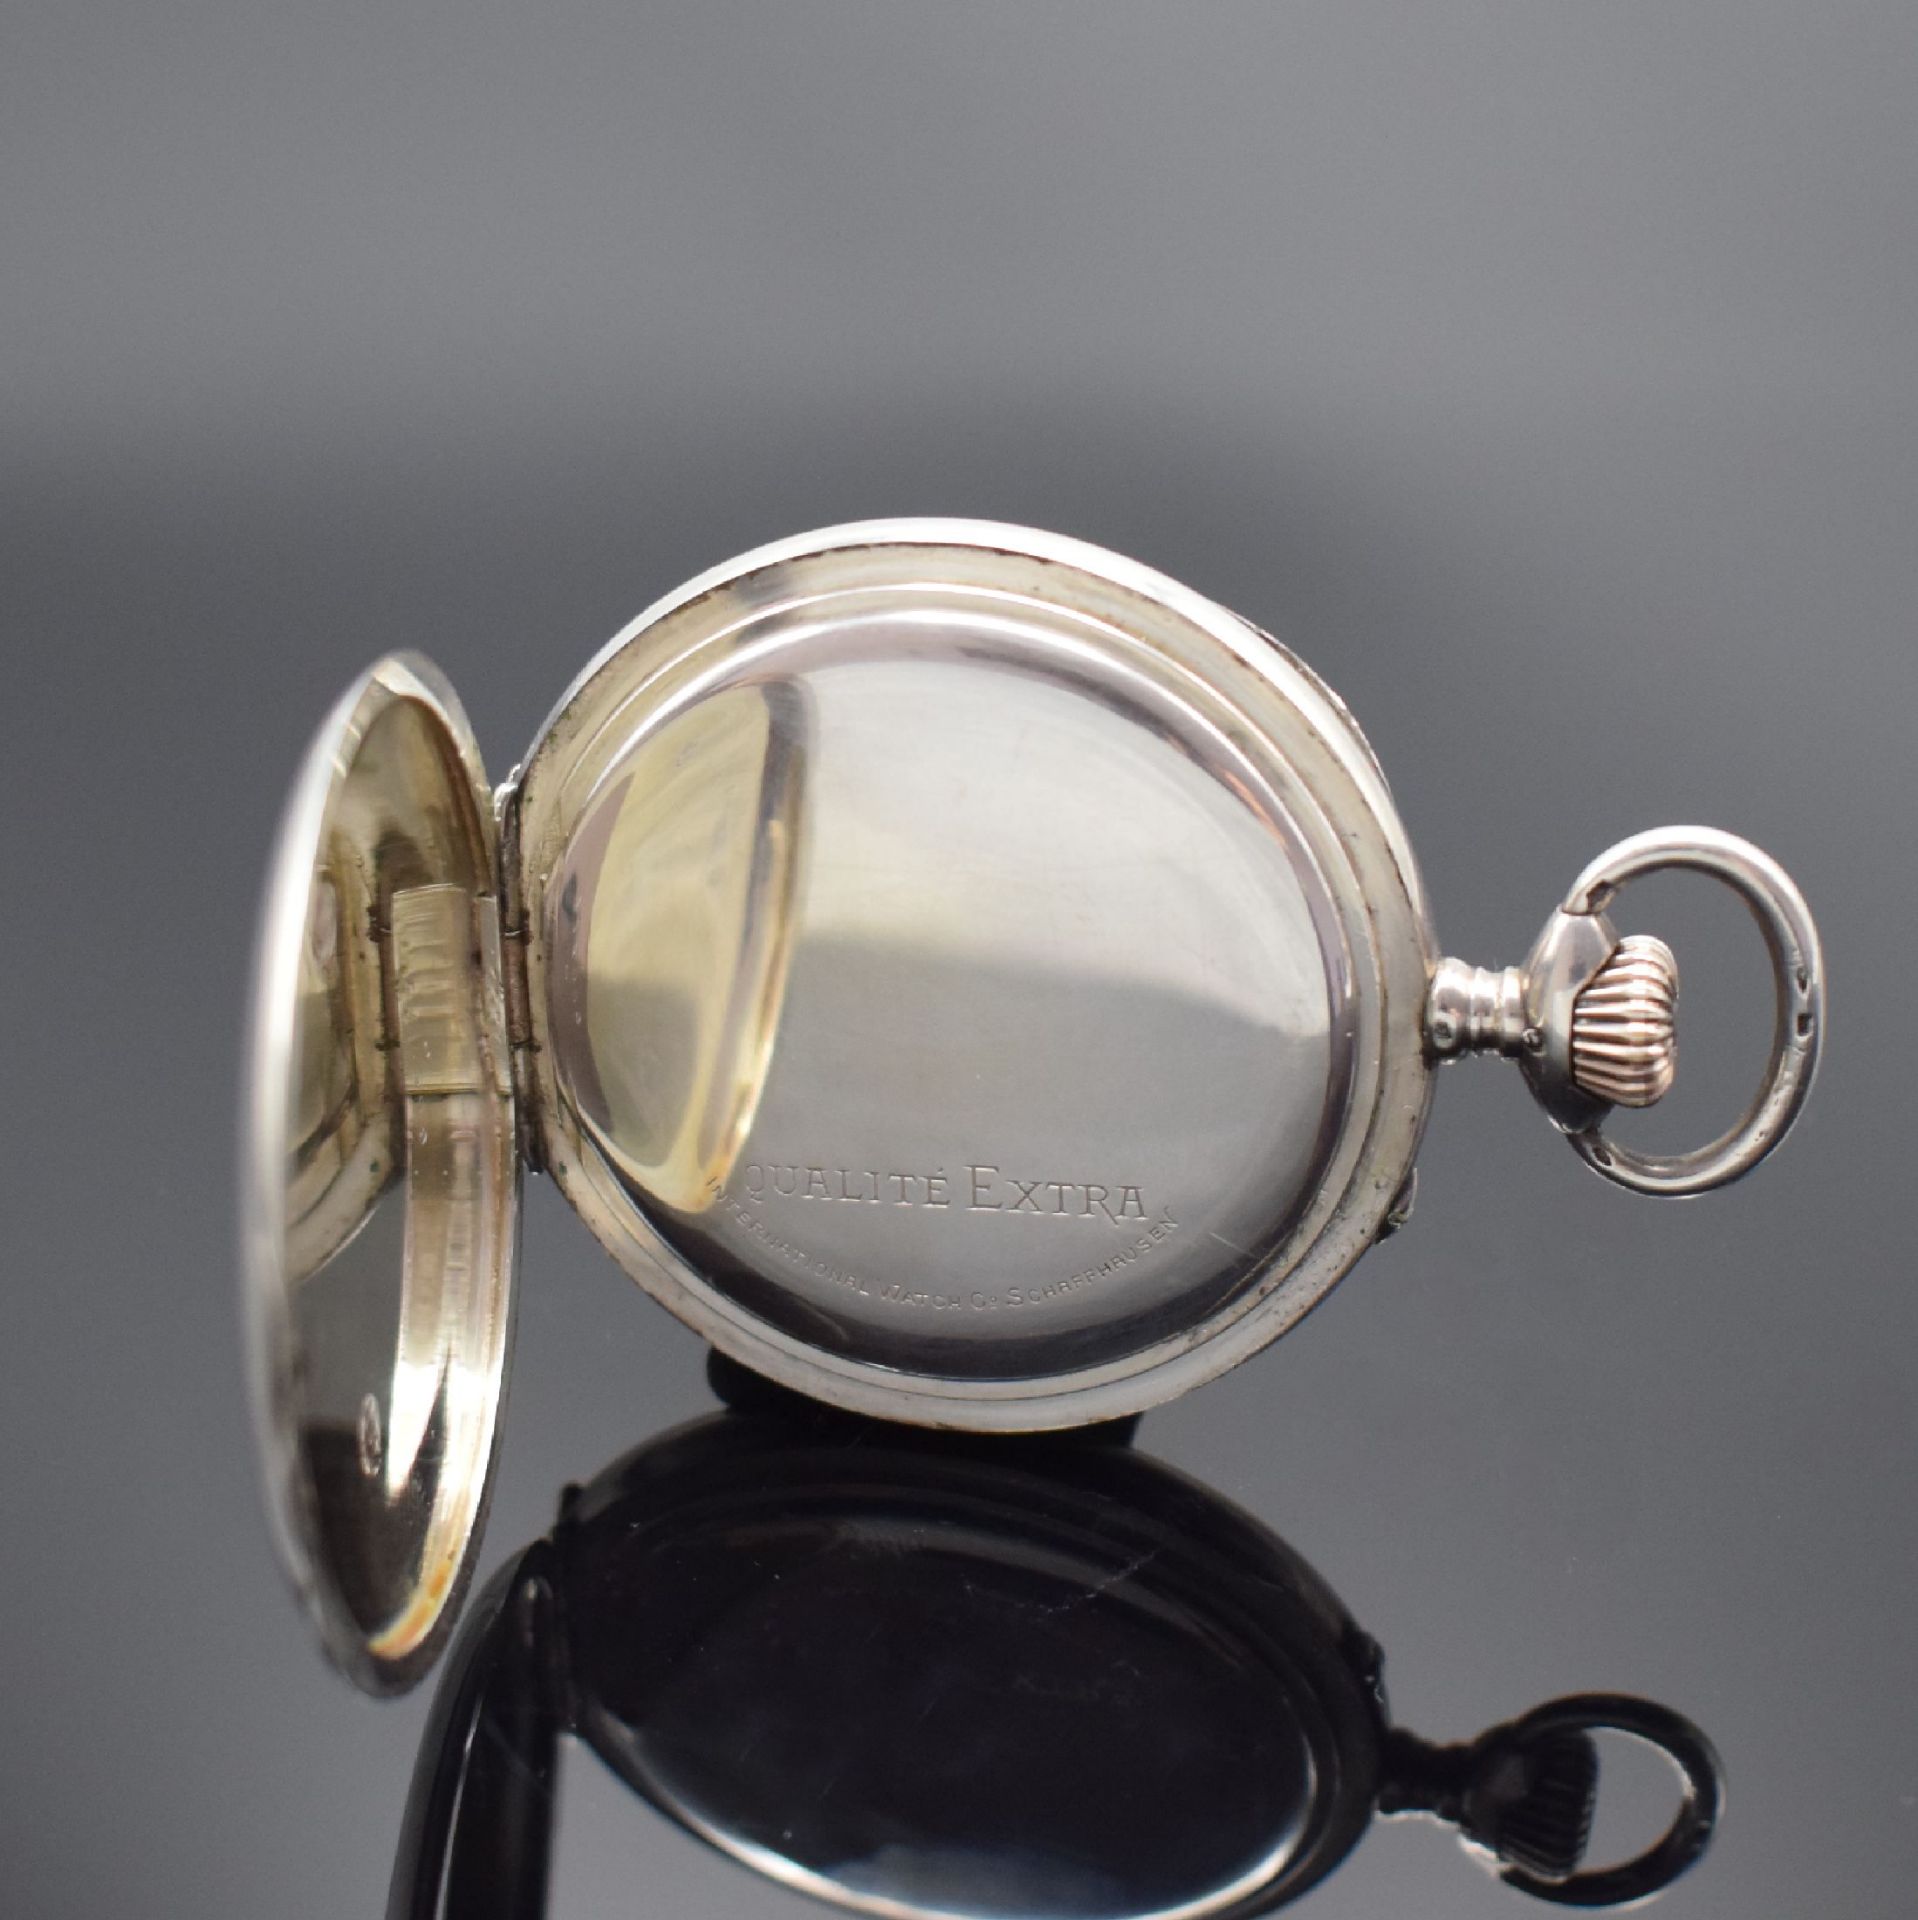 IWC 'Qualität Extra' seltene große Taschenuhr in Silber, - Bild 4 aus 6